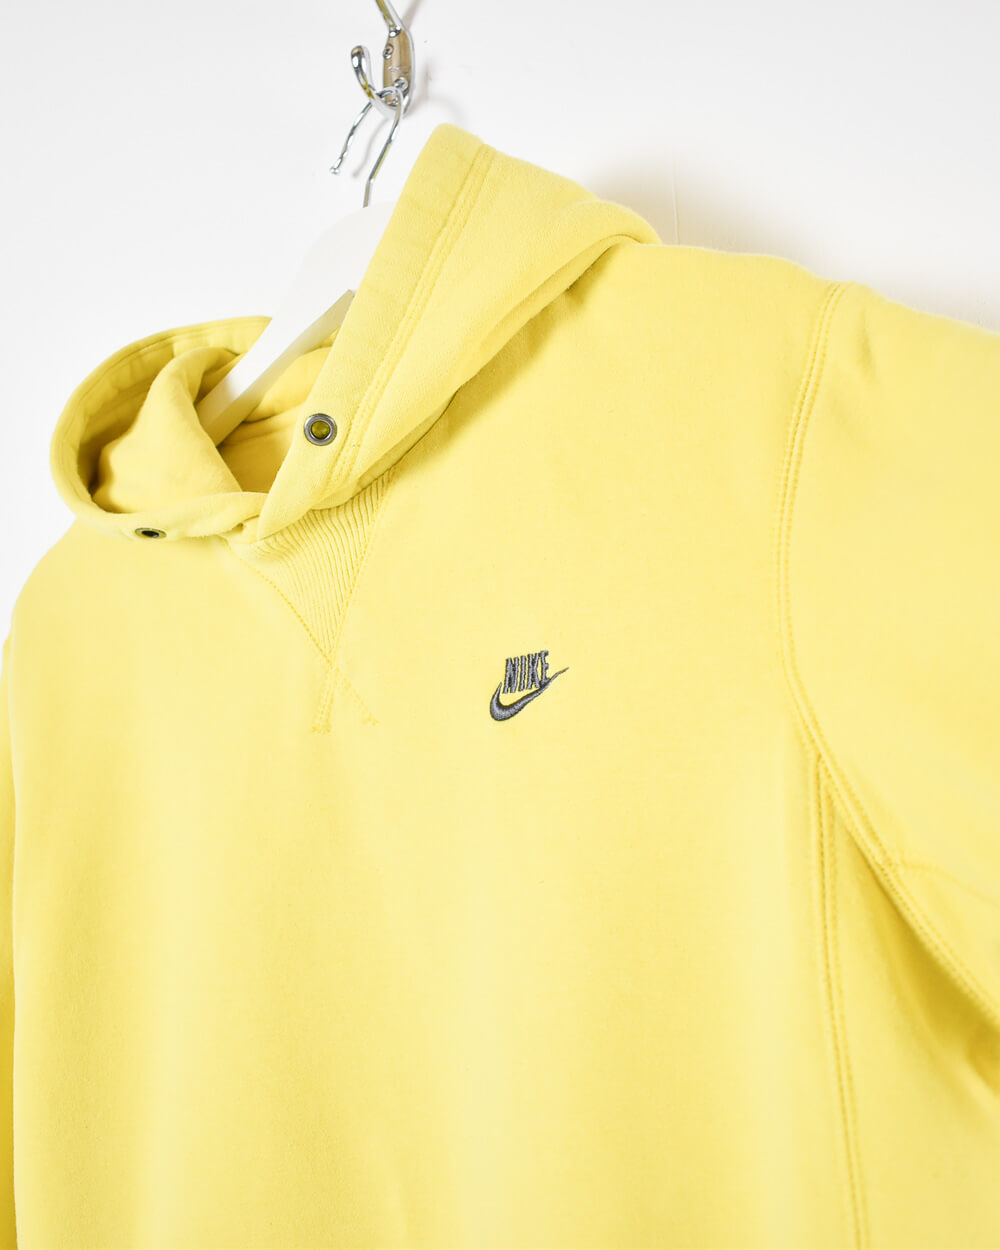 Yellow Nike Hoodie - Medium